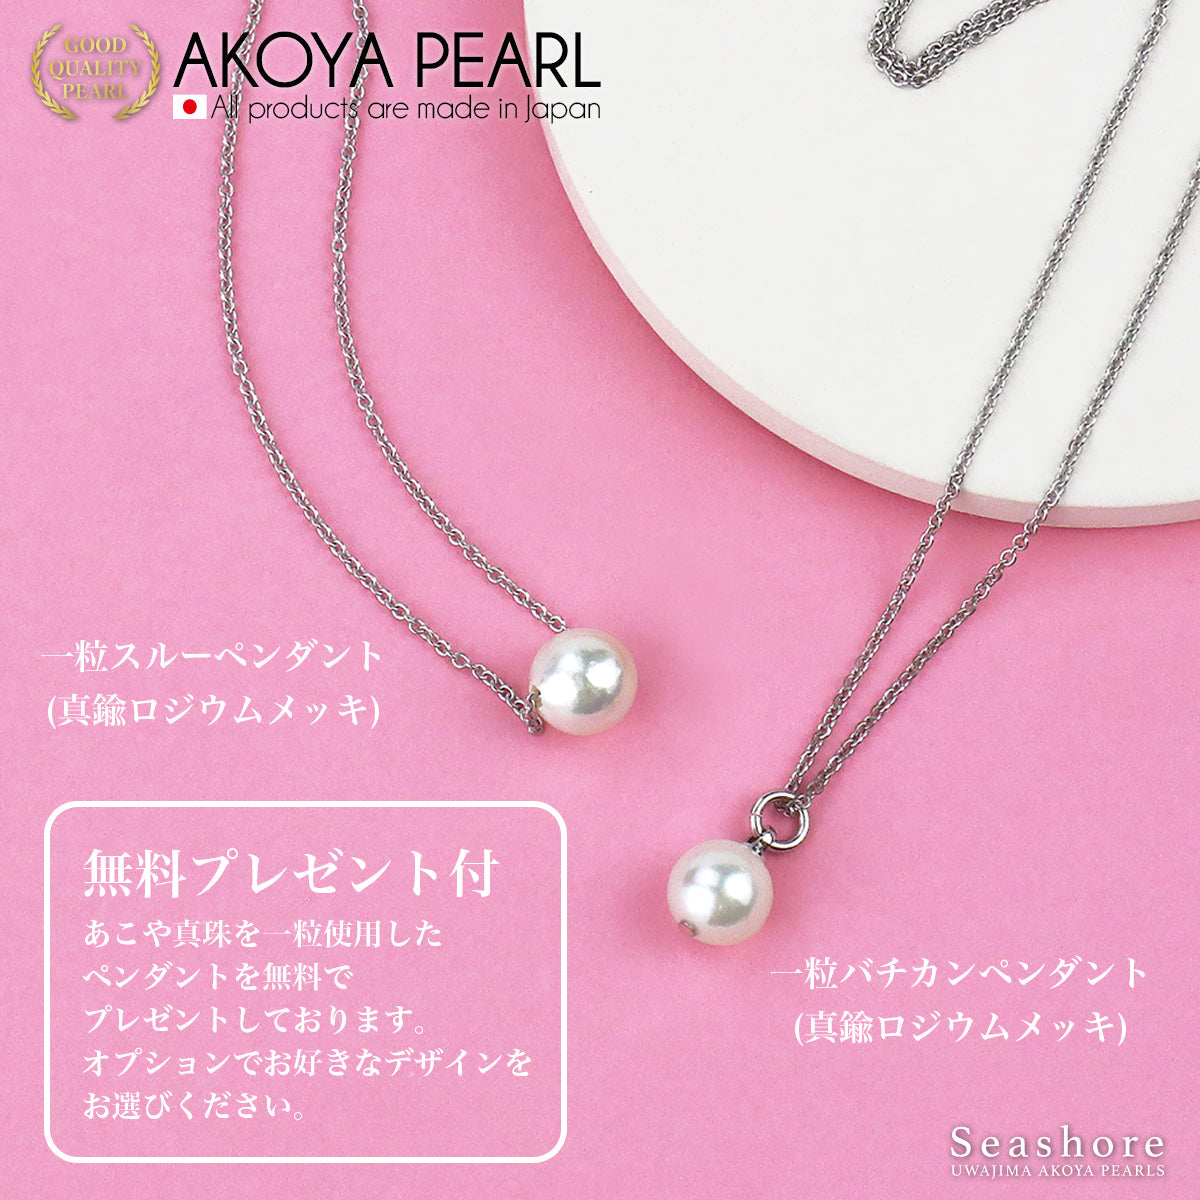 花珠珍珠正装项链 2 件套大珠子 [8.5-9.0 毫米]（含耳环）正装套装，带真品证书和用于仪式场合的储物盒